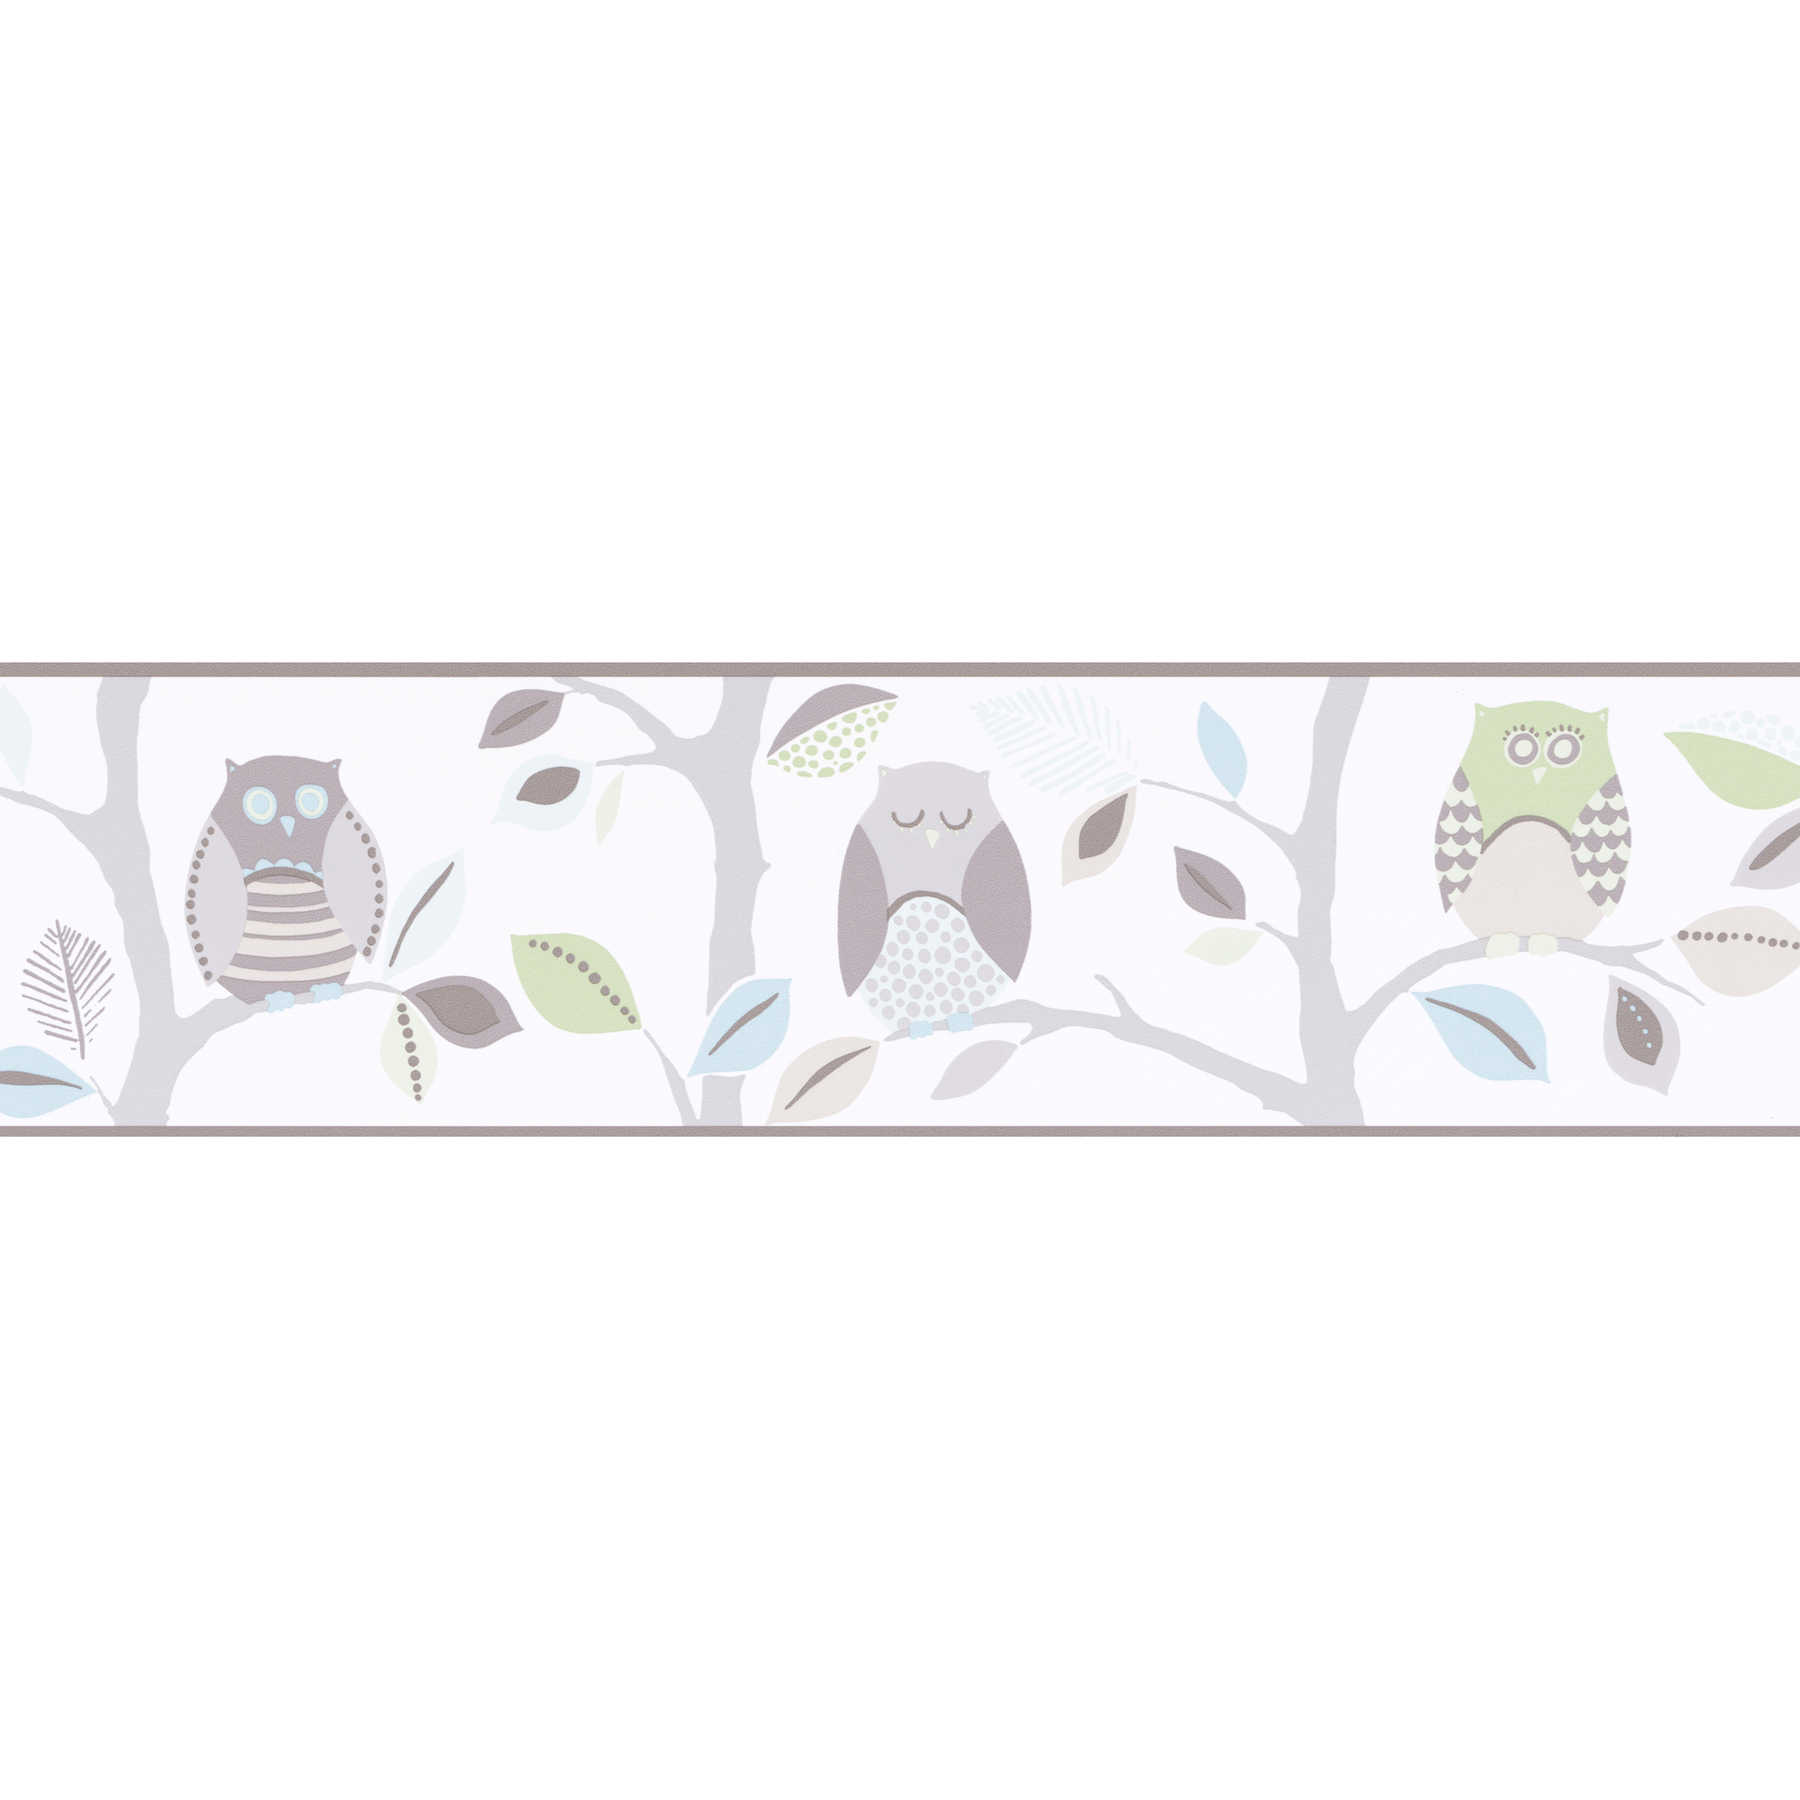 Cenefa de papel pintado de búhos para habitación infantil - beige, gris, verde
